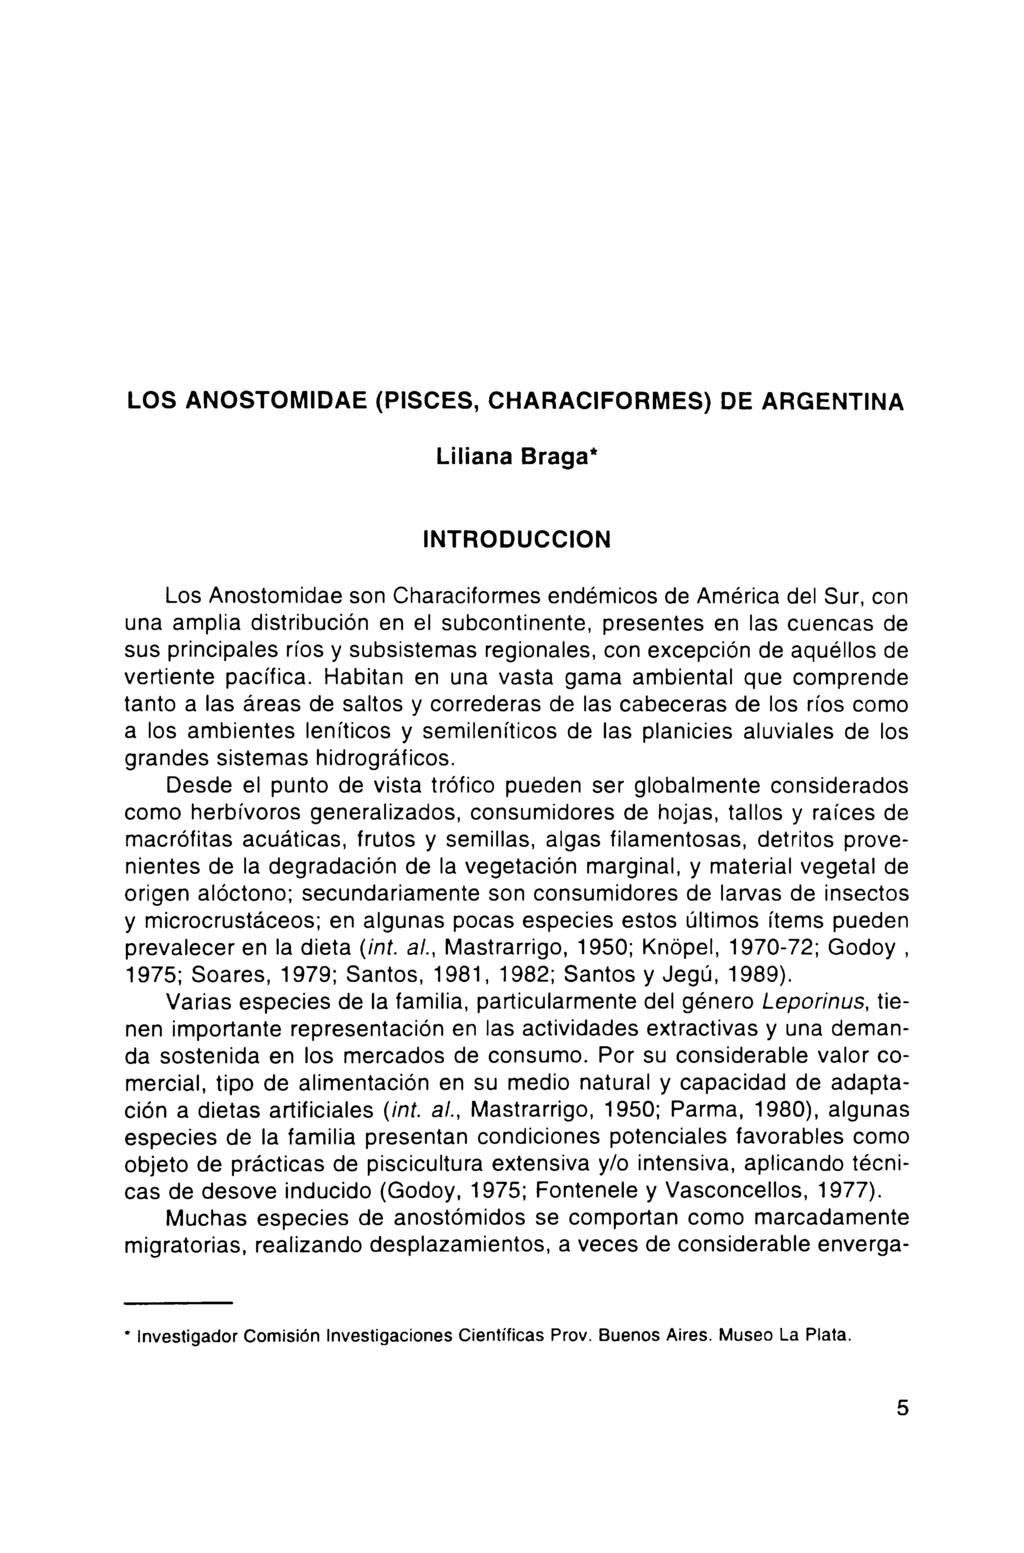 LOS ANOSTOMIDAE (PISCES, CHARACIFORMES) DE ARGENTINA Liliana Braga* INTRODUCCION Los Anostomidae son Characiformes endémicos de América del Sur, con una amplia distribución en el subcontinente,